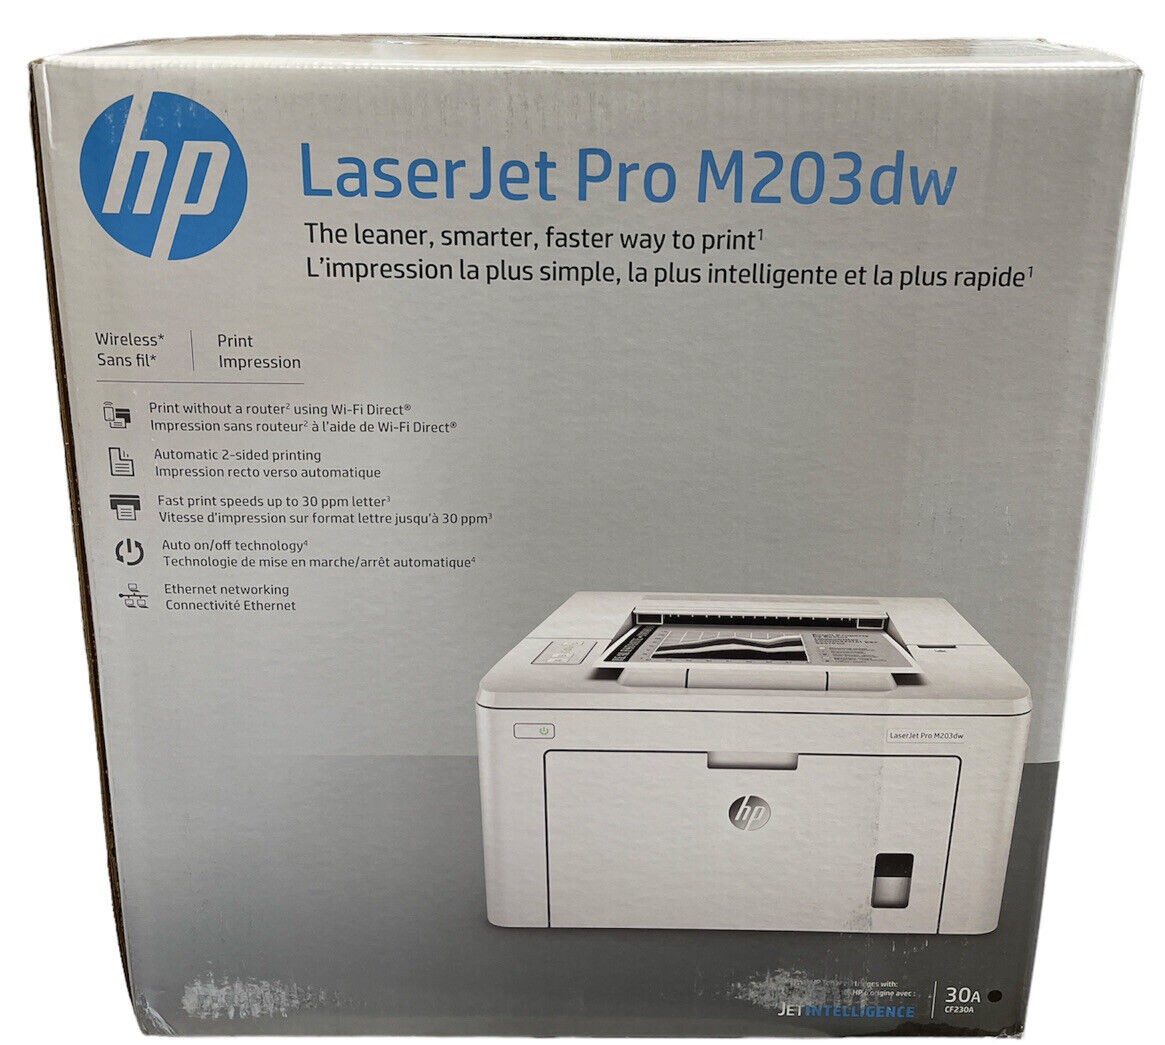 impresoras y scanners - Impresora HP LaserJet Pro serie M203DW blanco y negro